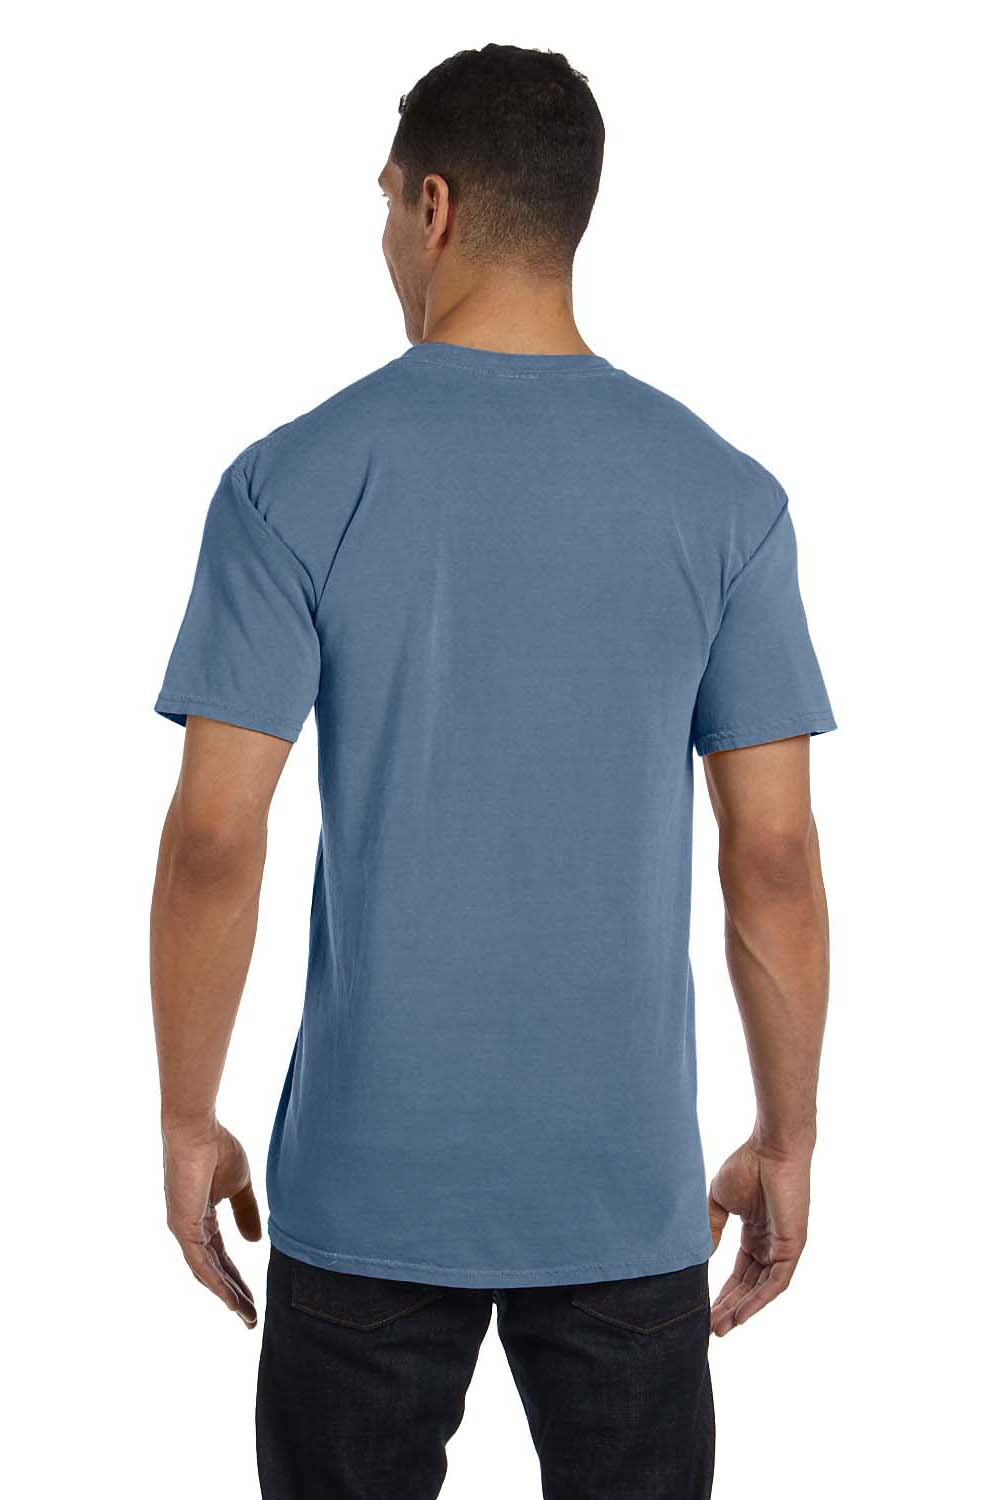 Comfort Colors 6030CC Mens Short Sleeve Crewneck T-Shirt w/ Pocket Blue Jean Back